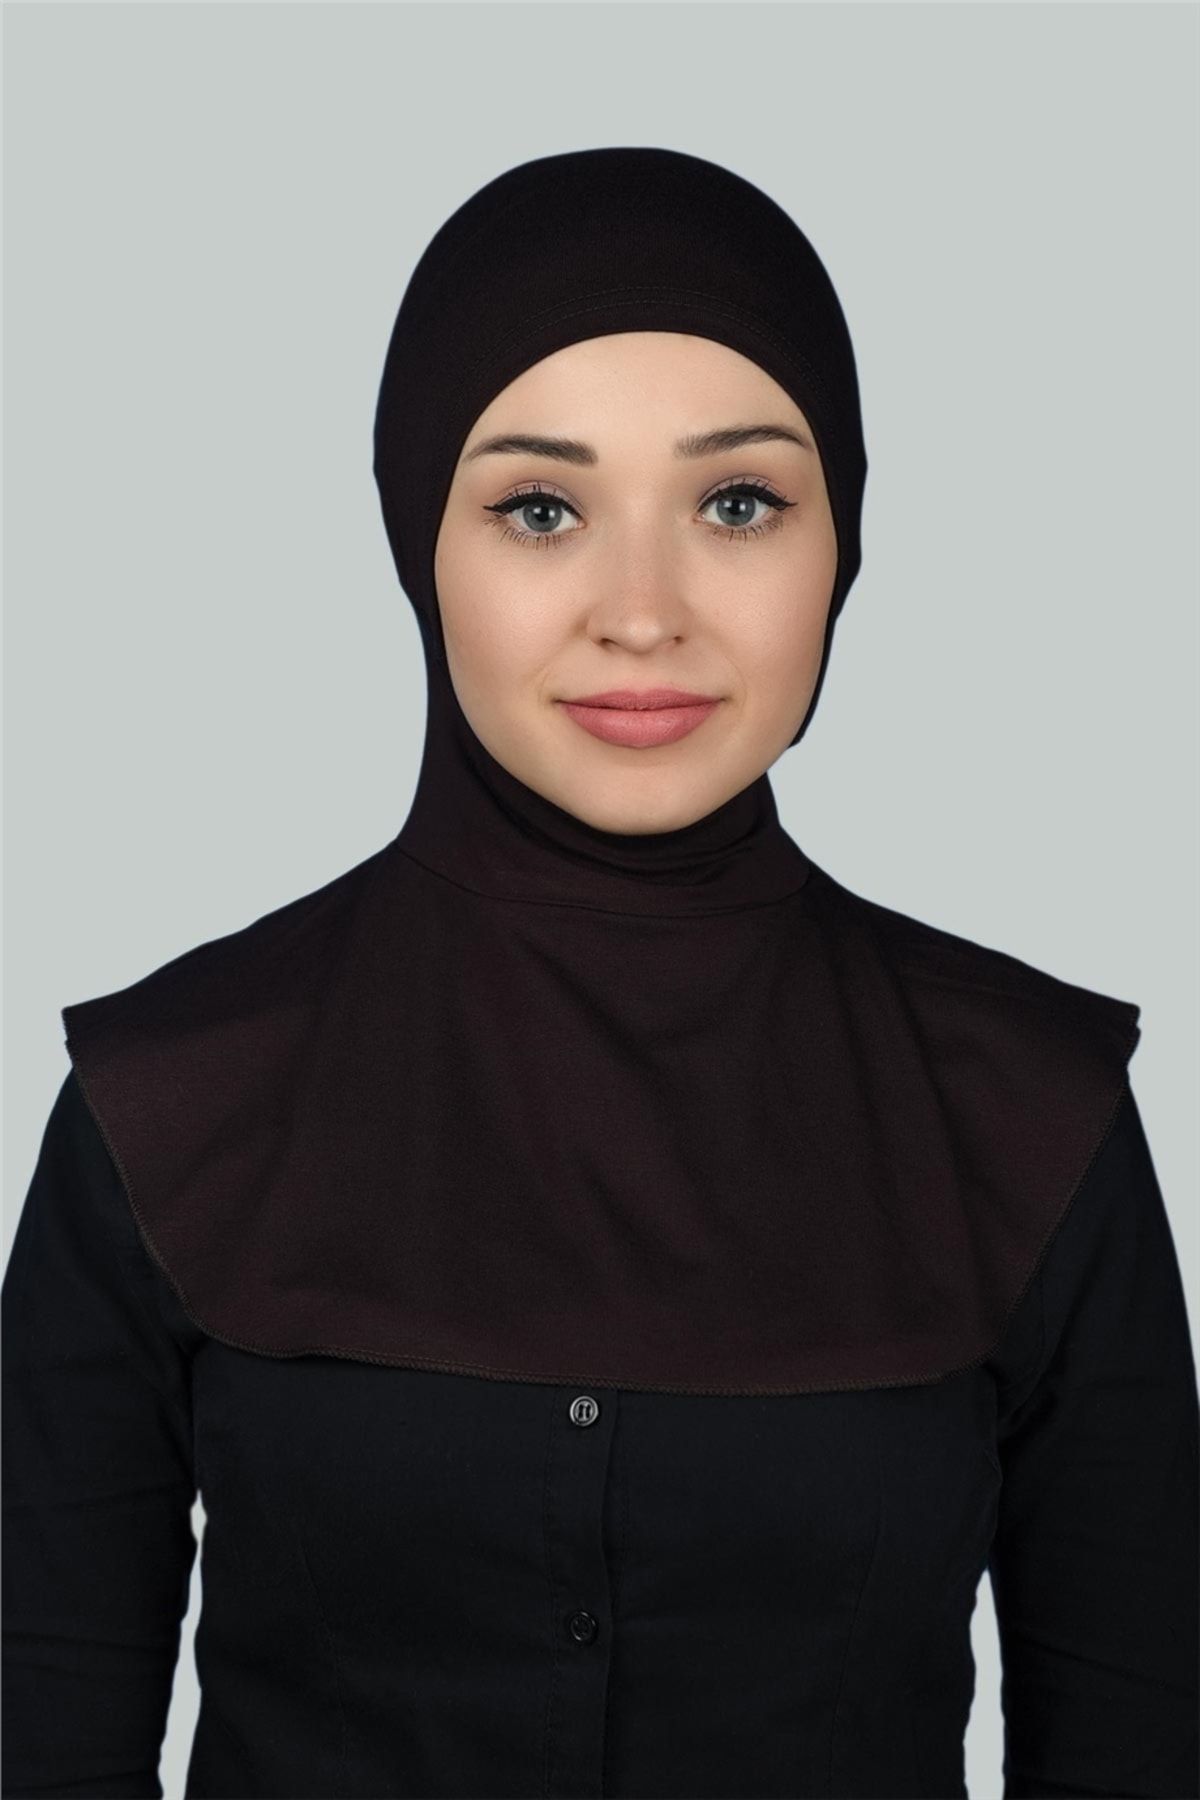 Altobeh Kadın Tesettür Pratik Boyunluklu Hijab - Sporcu Bone - Koyu Kahverengi